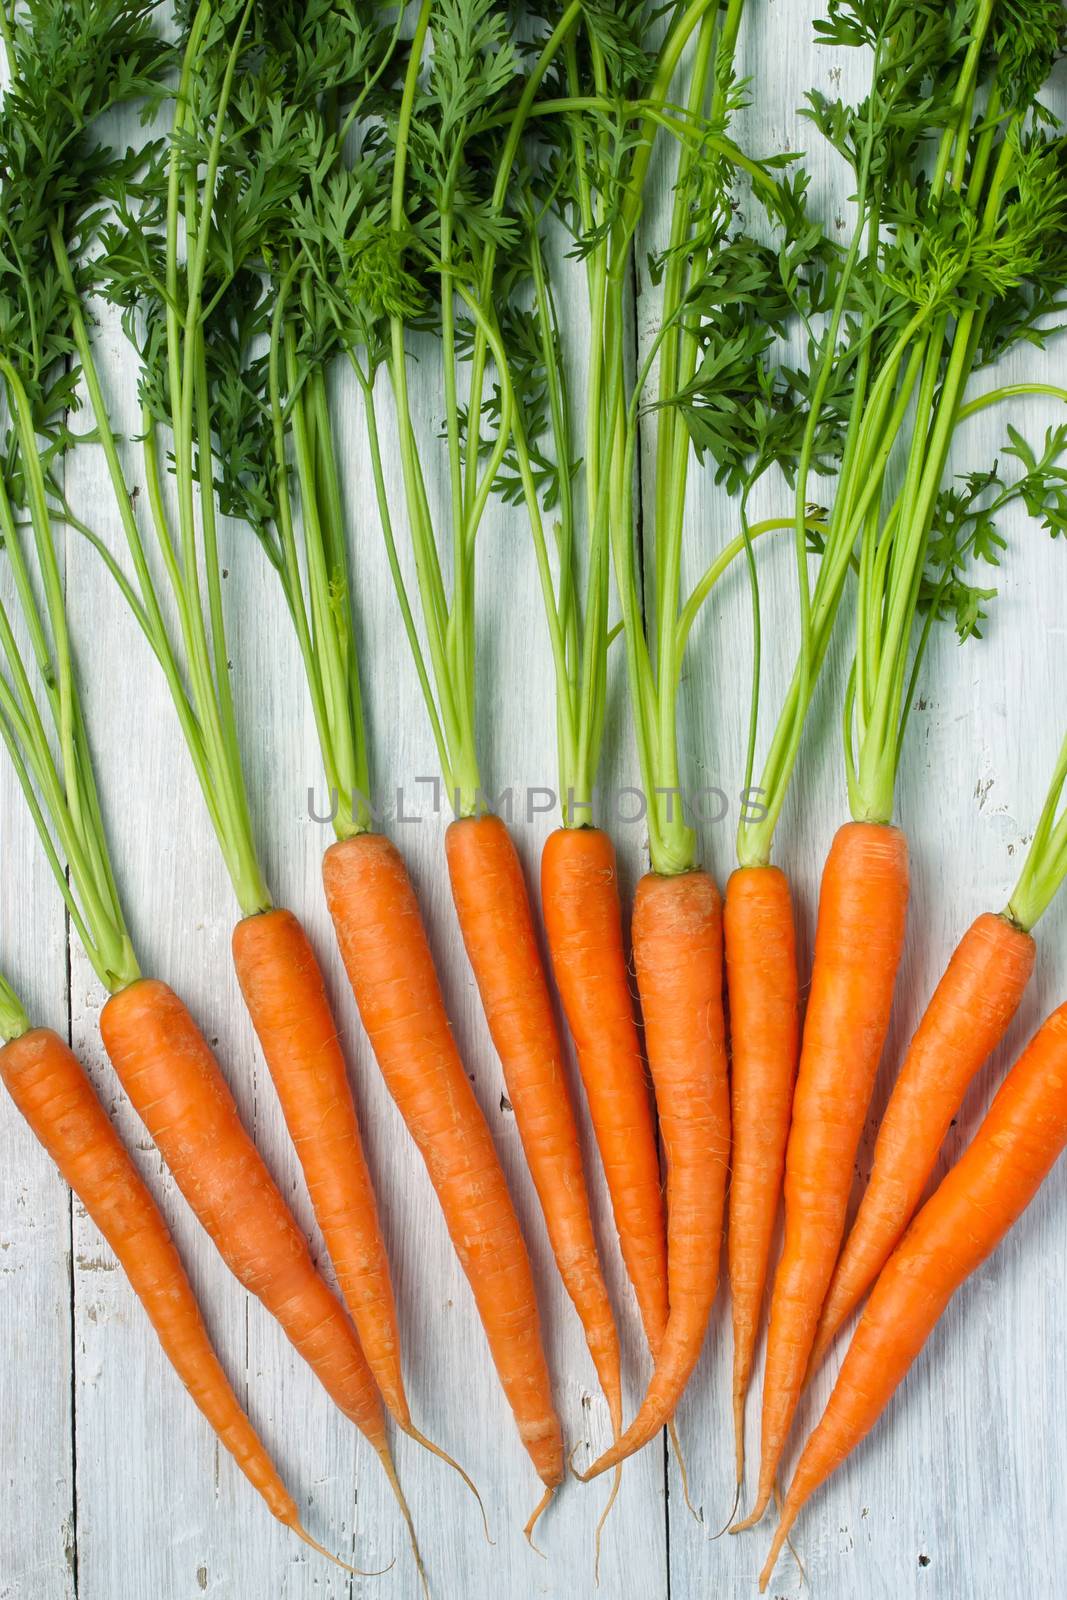 Carrots on the white background by Deniskarpenkov